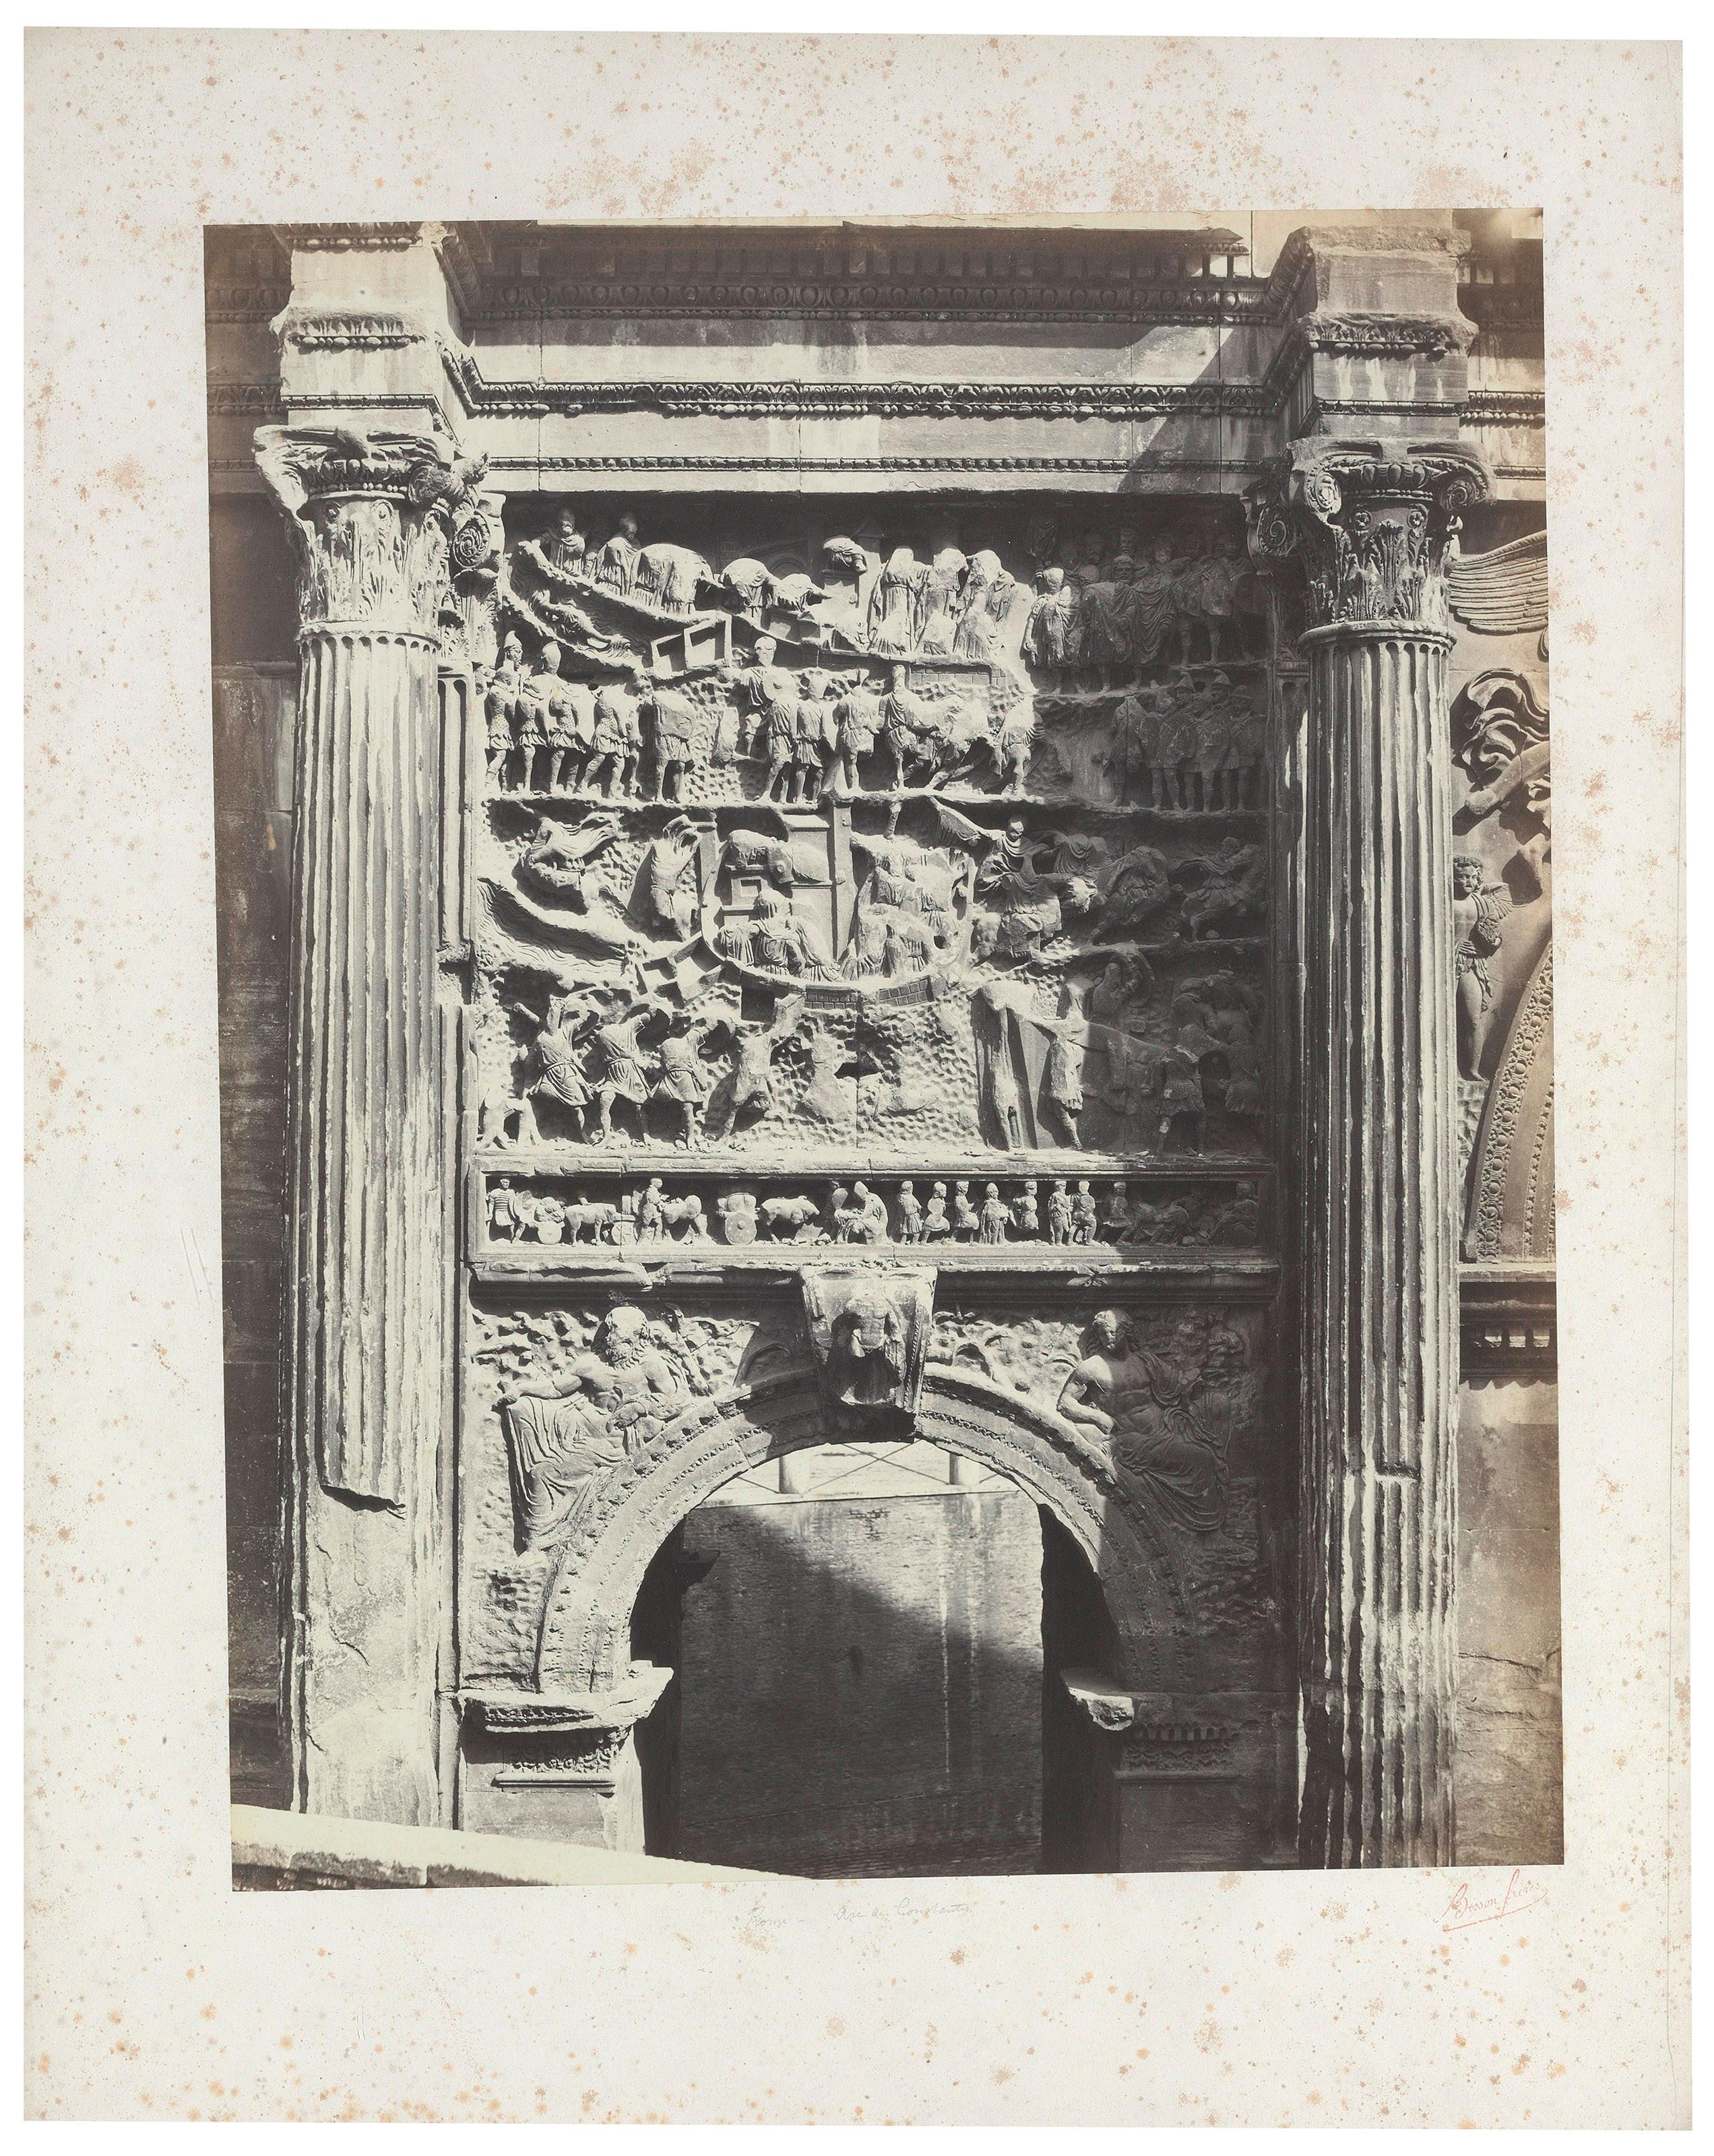 Bisson Frères Landscape Photograph - Architectural Images, Frieze Detail (Arch of Septimius Severus, Rome), Europe